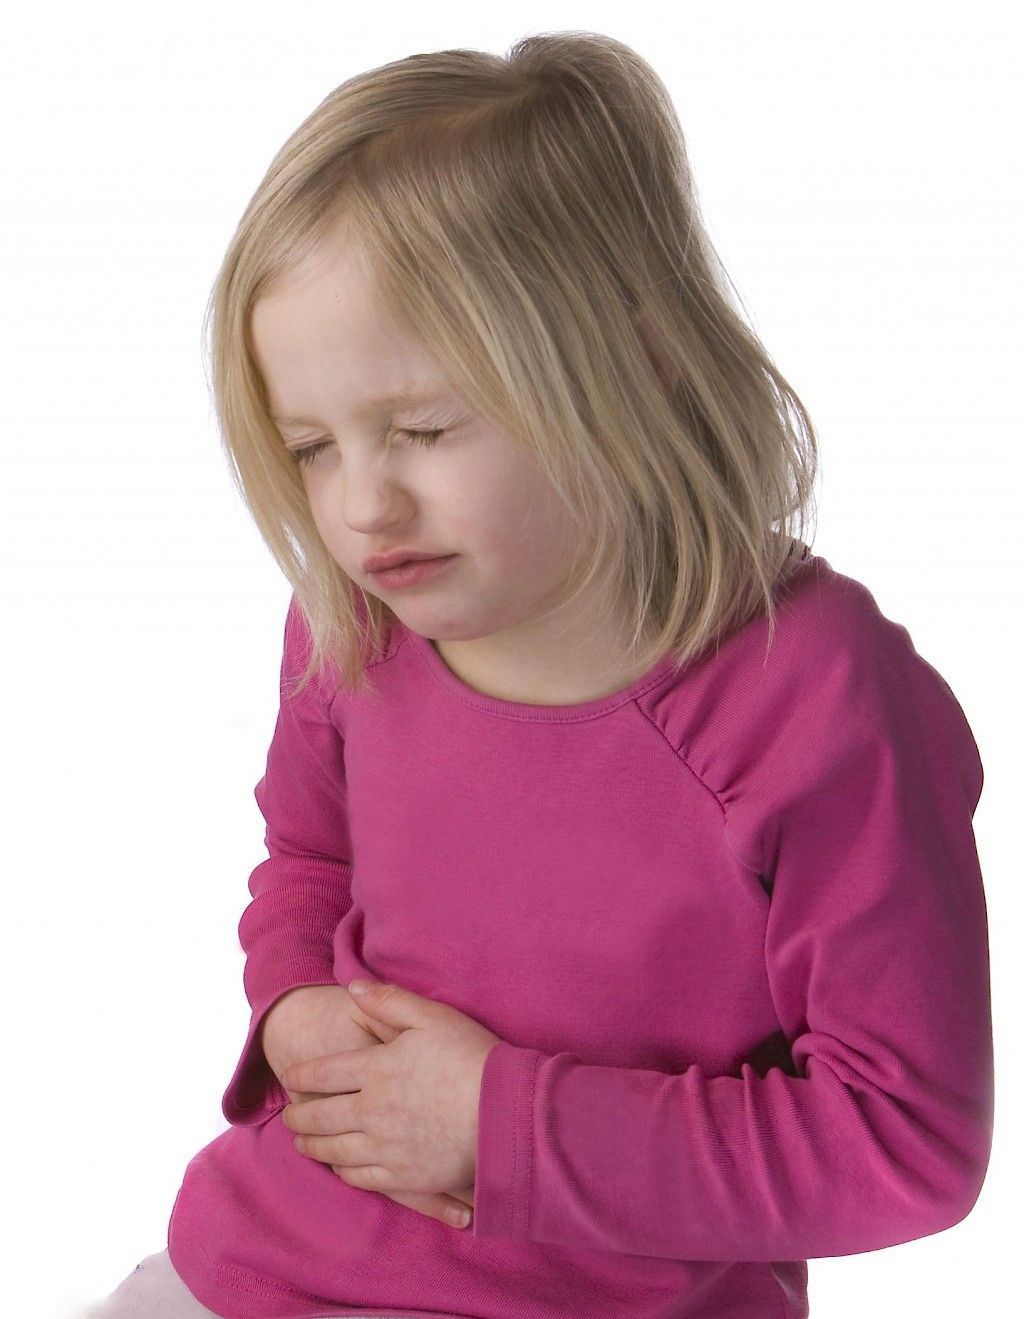 Lapsen vatsakipu voi kertoa ahdistuksesta